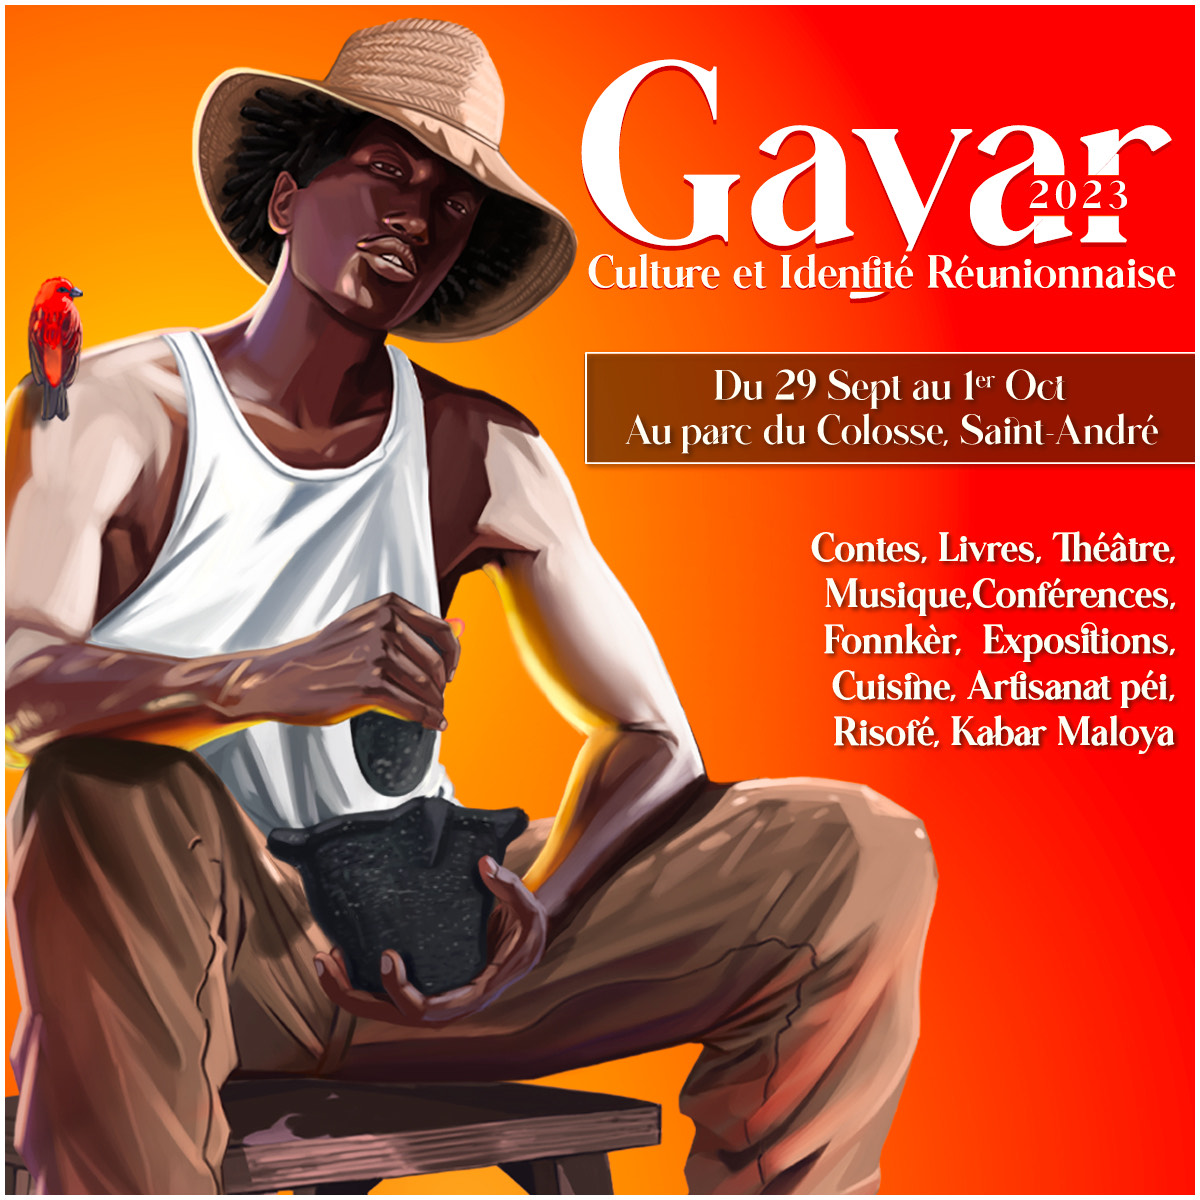 GAYAR - Salon de la culture et de l'identité réunionnaise - Affiche